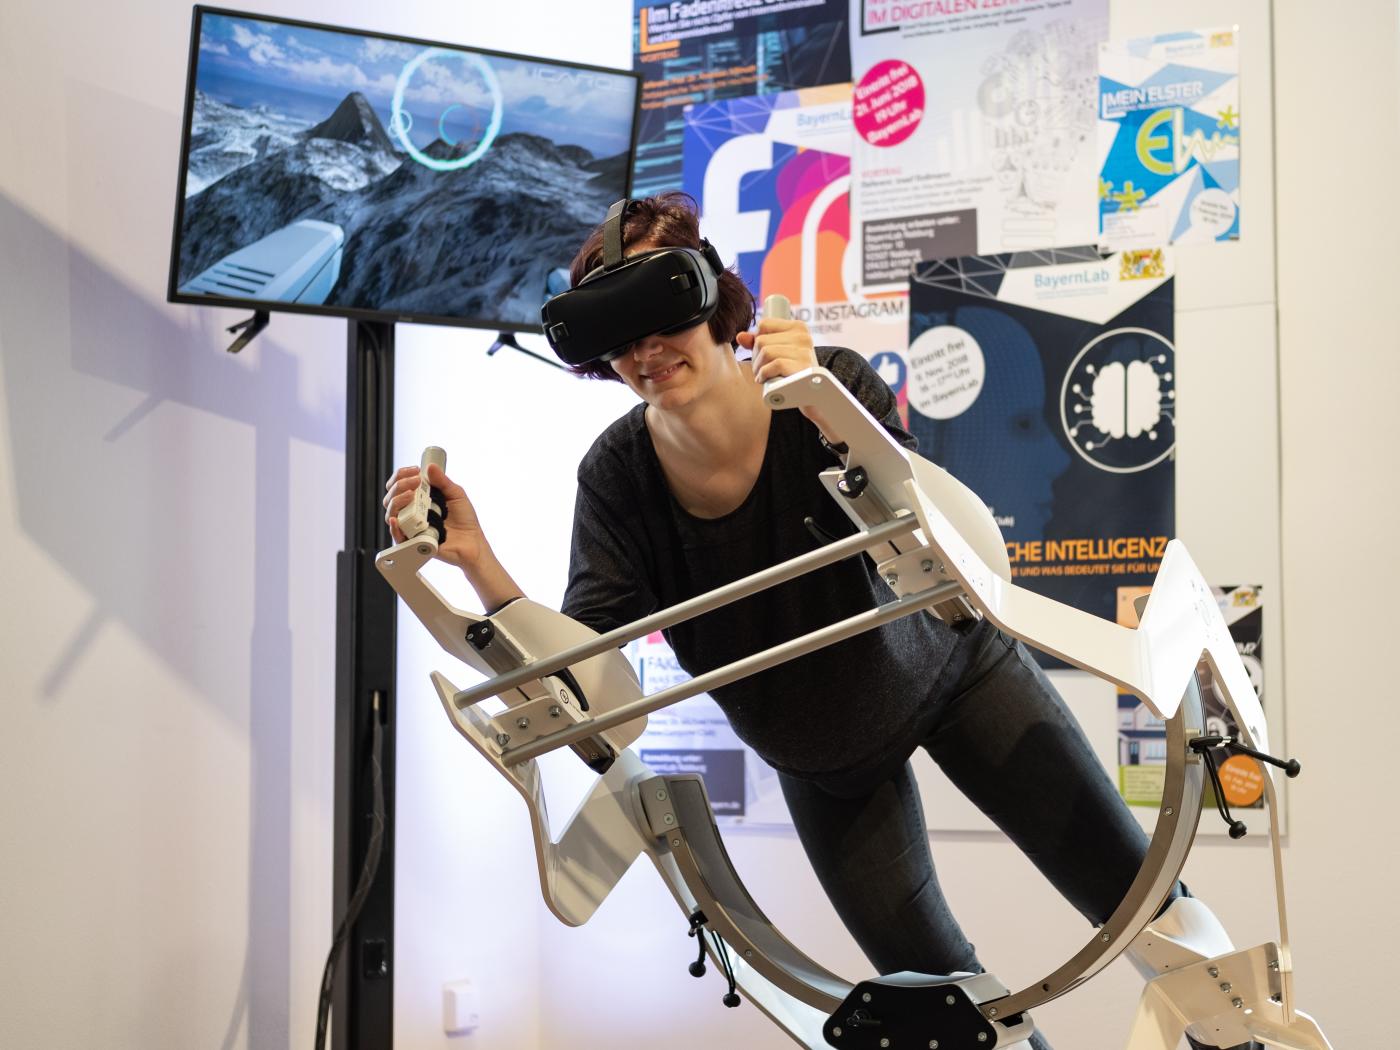 Der Icaros - die neue Fitness-Dimension. Auf dem Icaros-Gestell ist eine Frau in der Blank mit einer VR-Brille und testet den Icaros